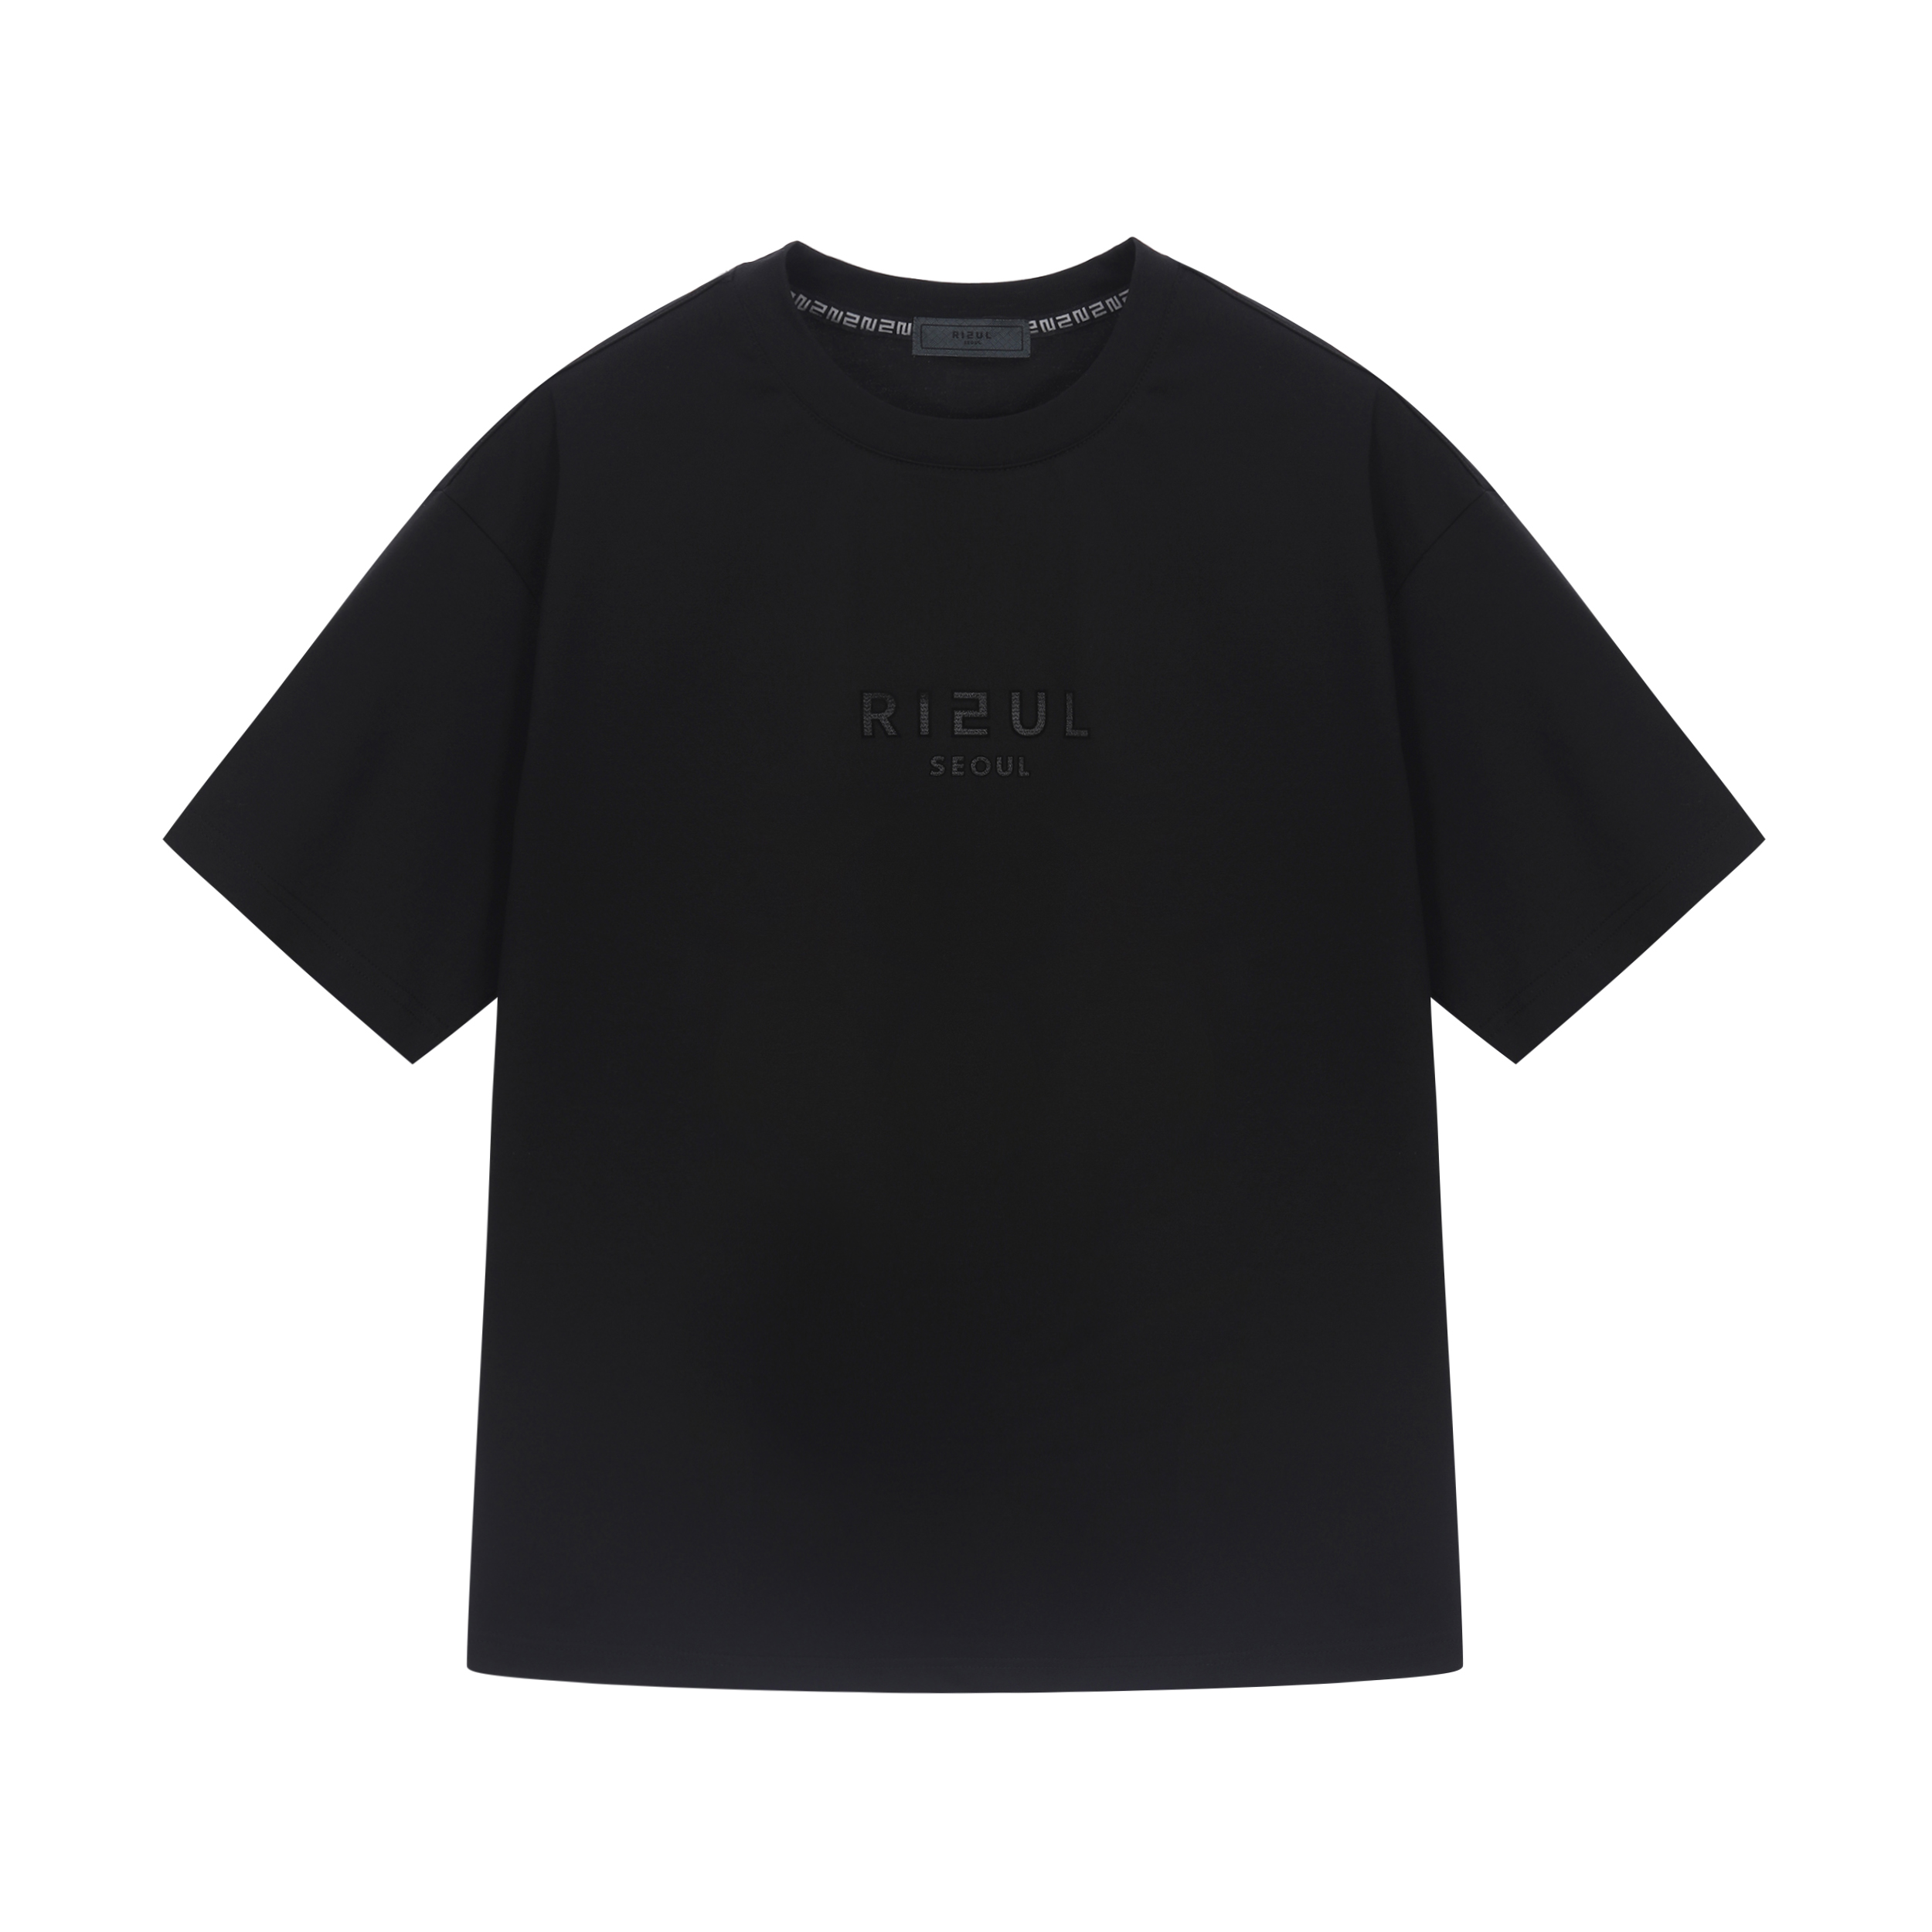 RIEUL 블랙 로고 티셔츠 블랙